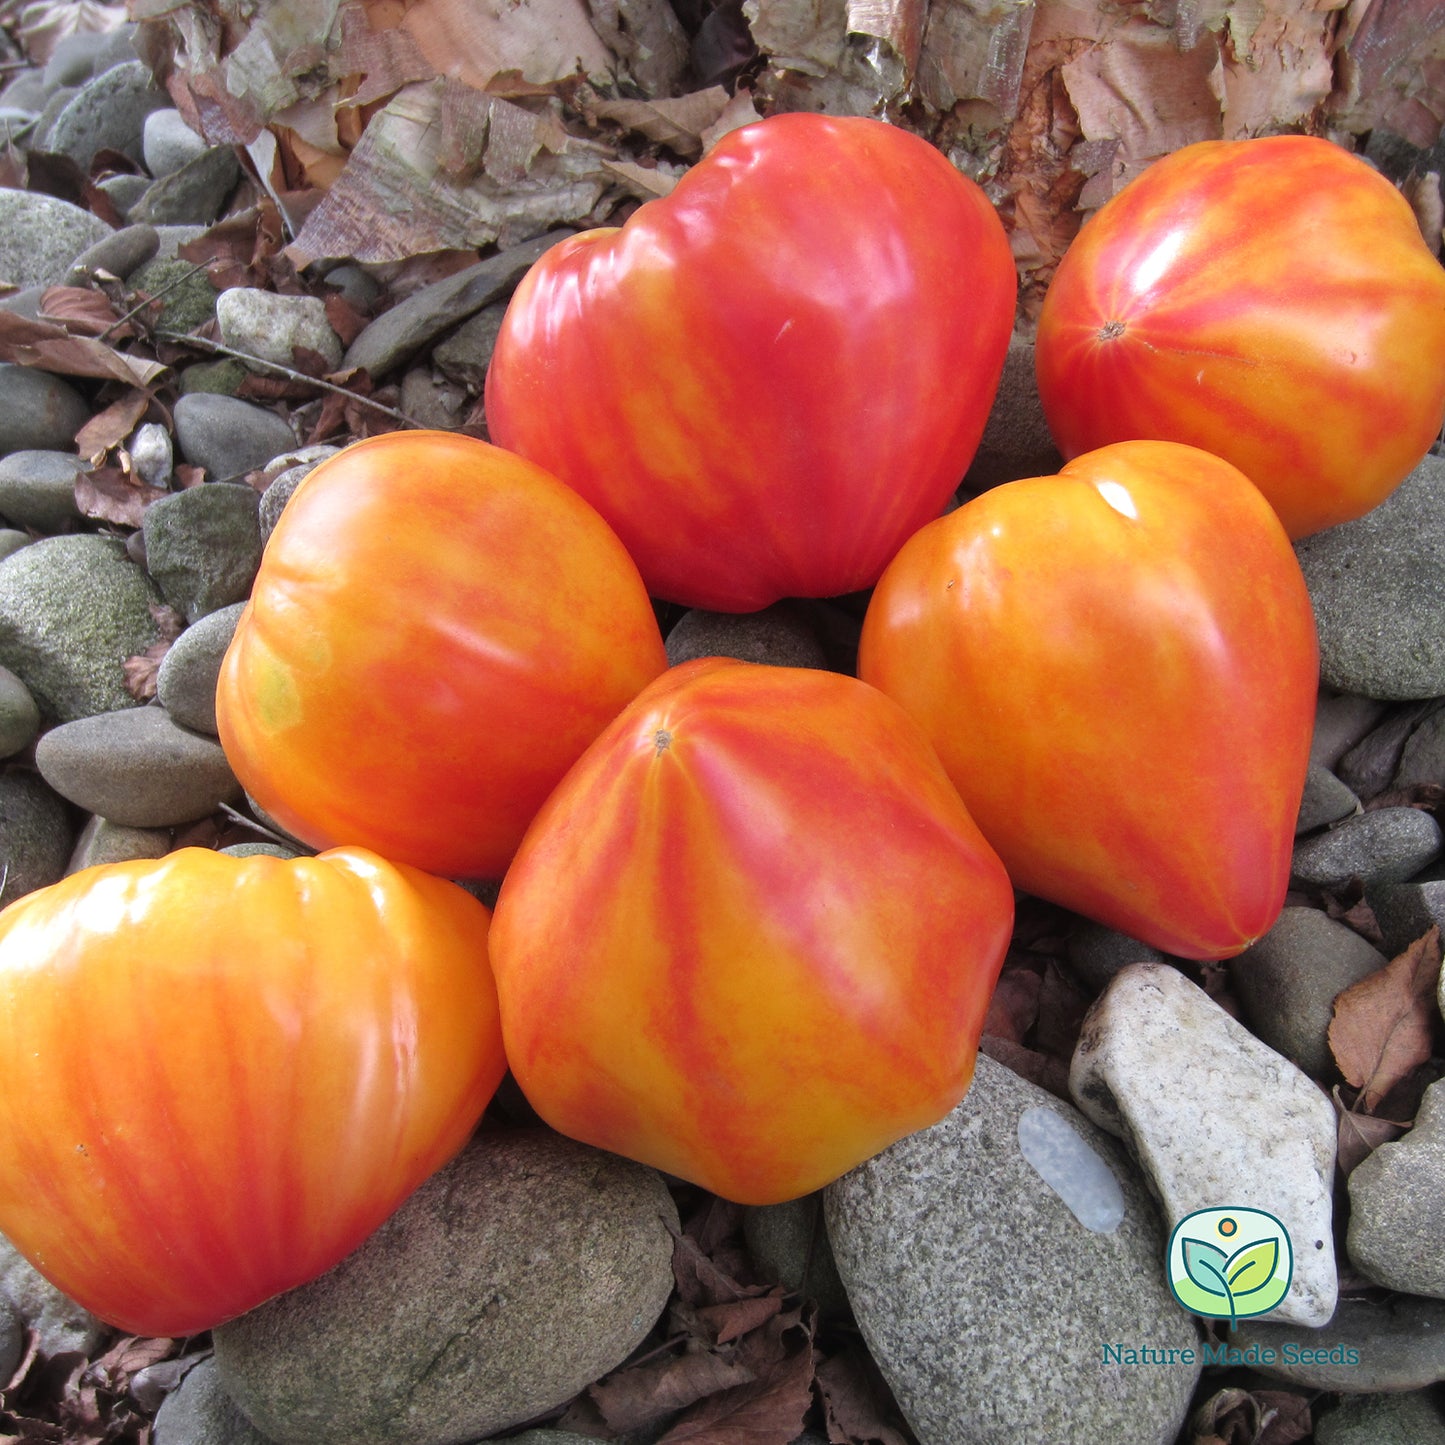 orange-russian-117-tomato-heirloom-non-gmo-seeds